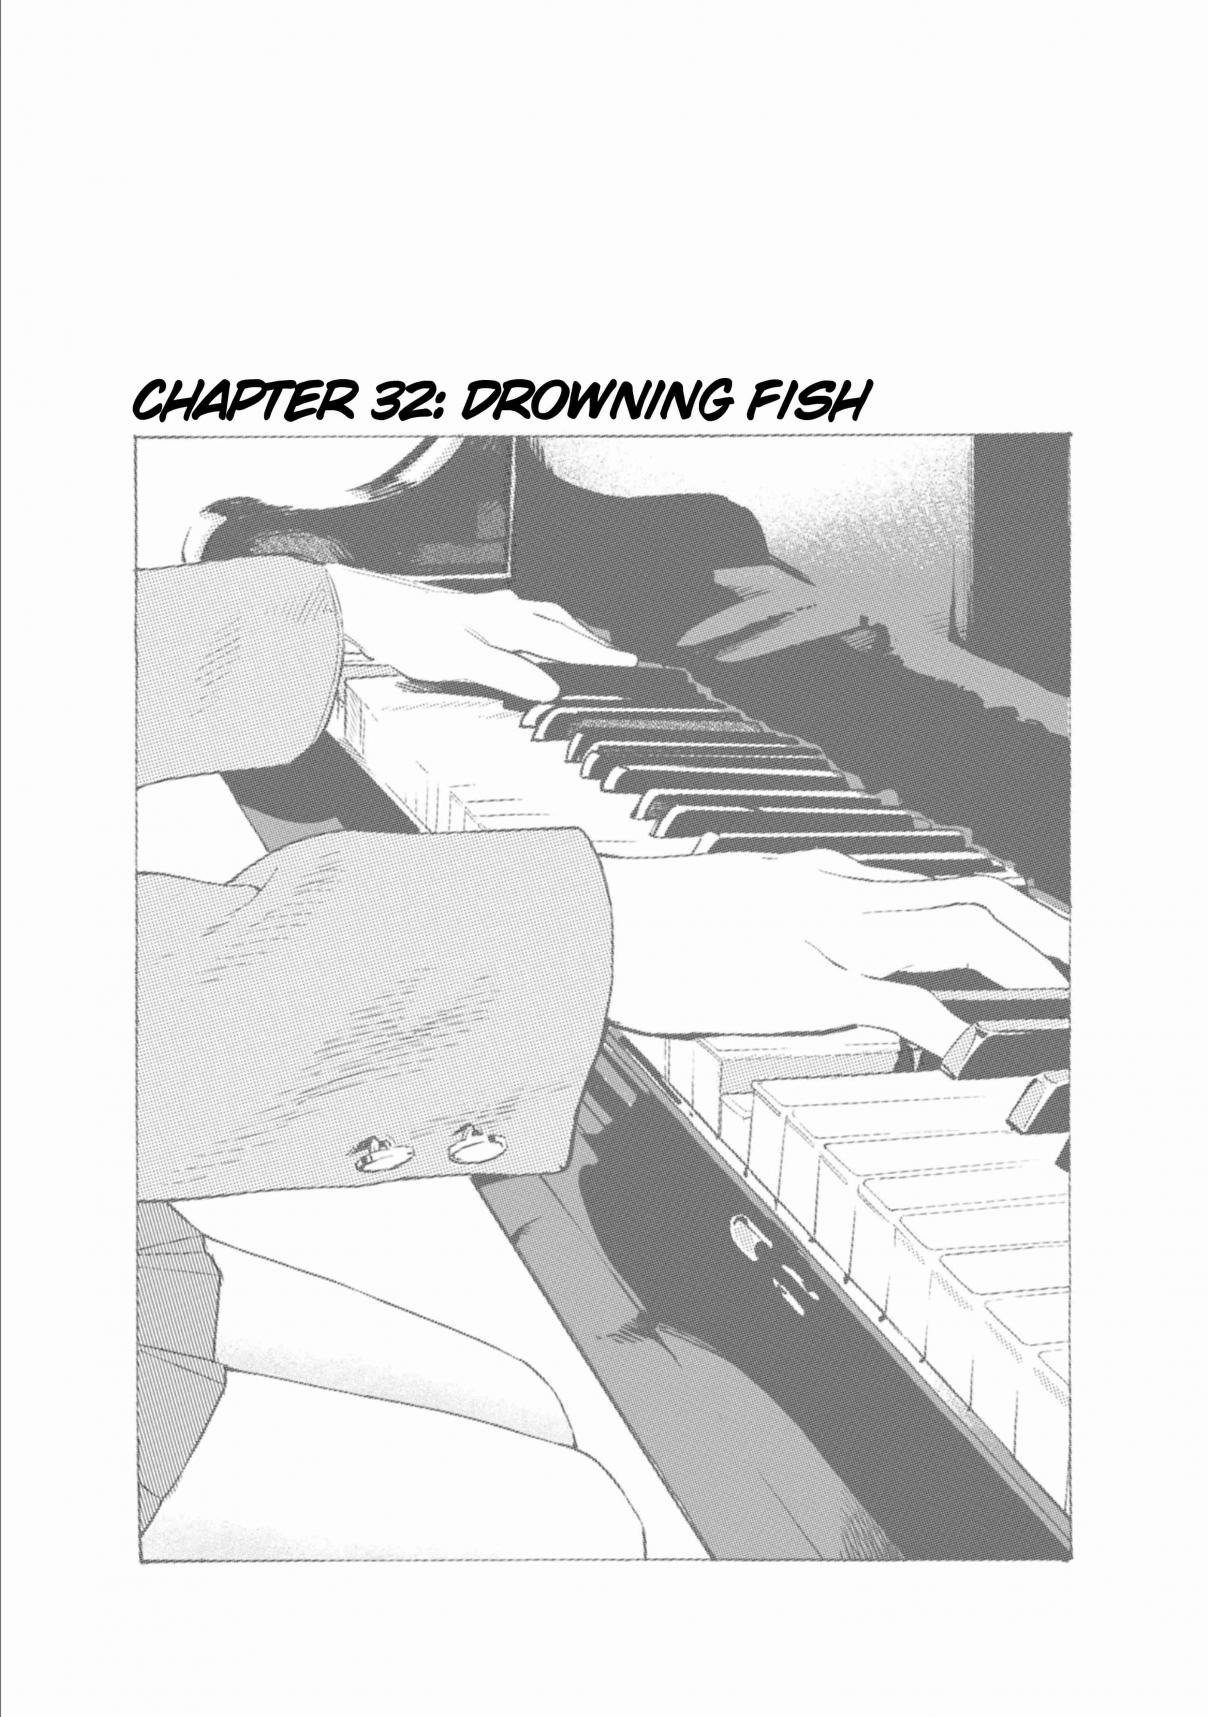 Musume no Tomodachi Vol. 4 Ch. 32 Drowning Fish